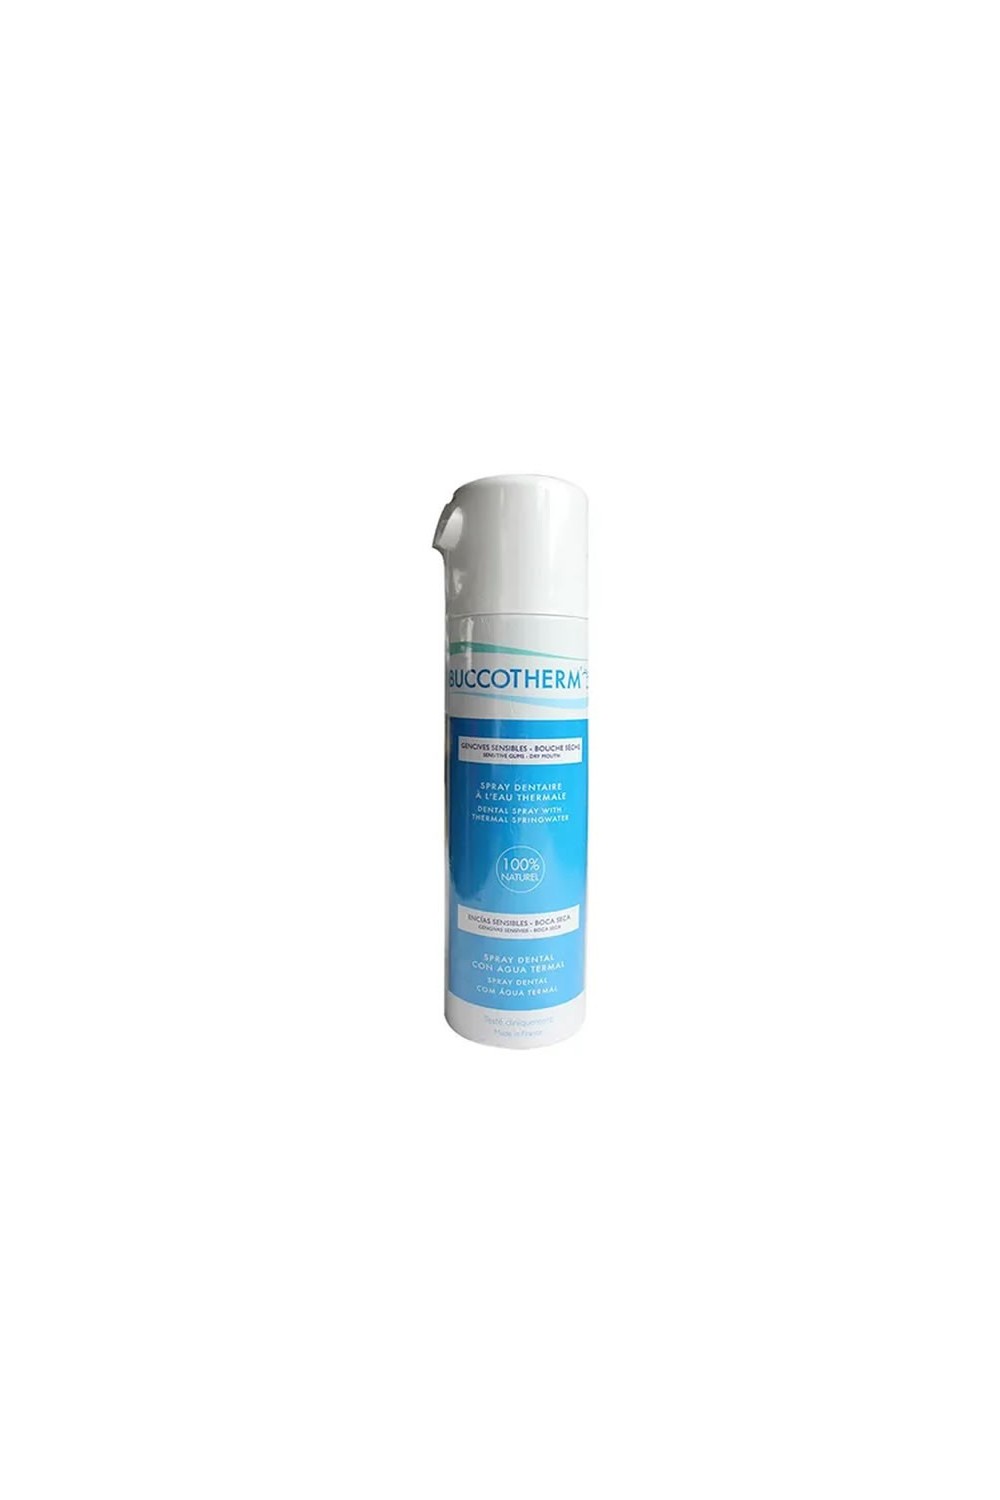 CINFA - Buccotherm Spray 200ml